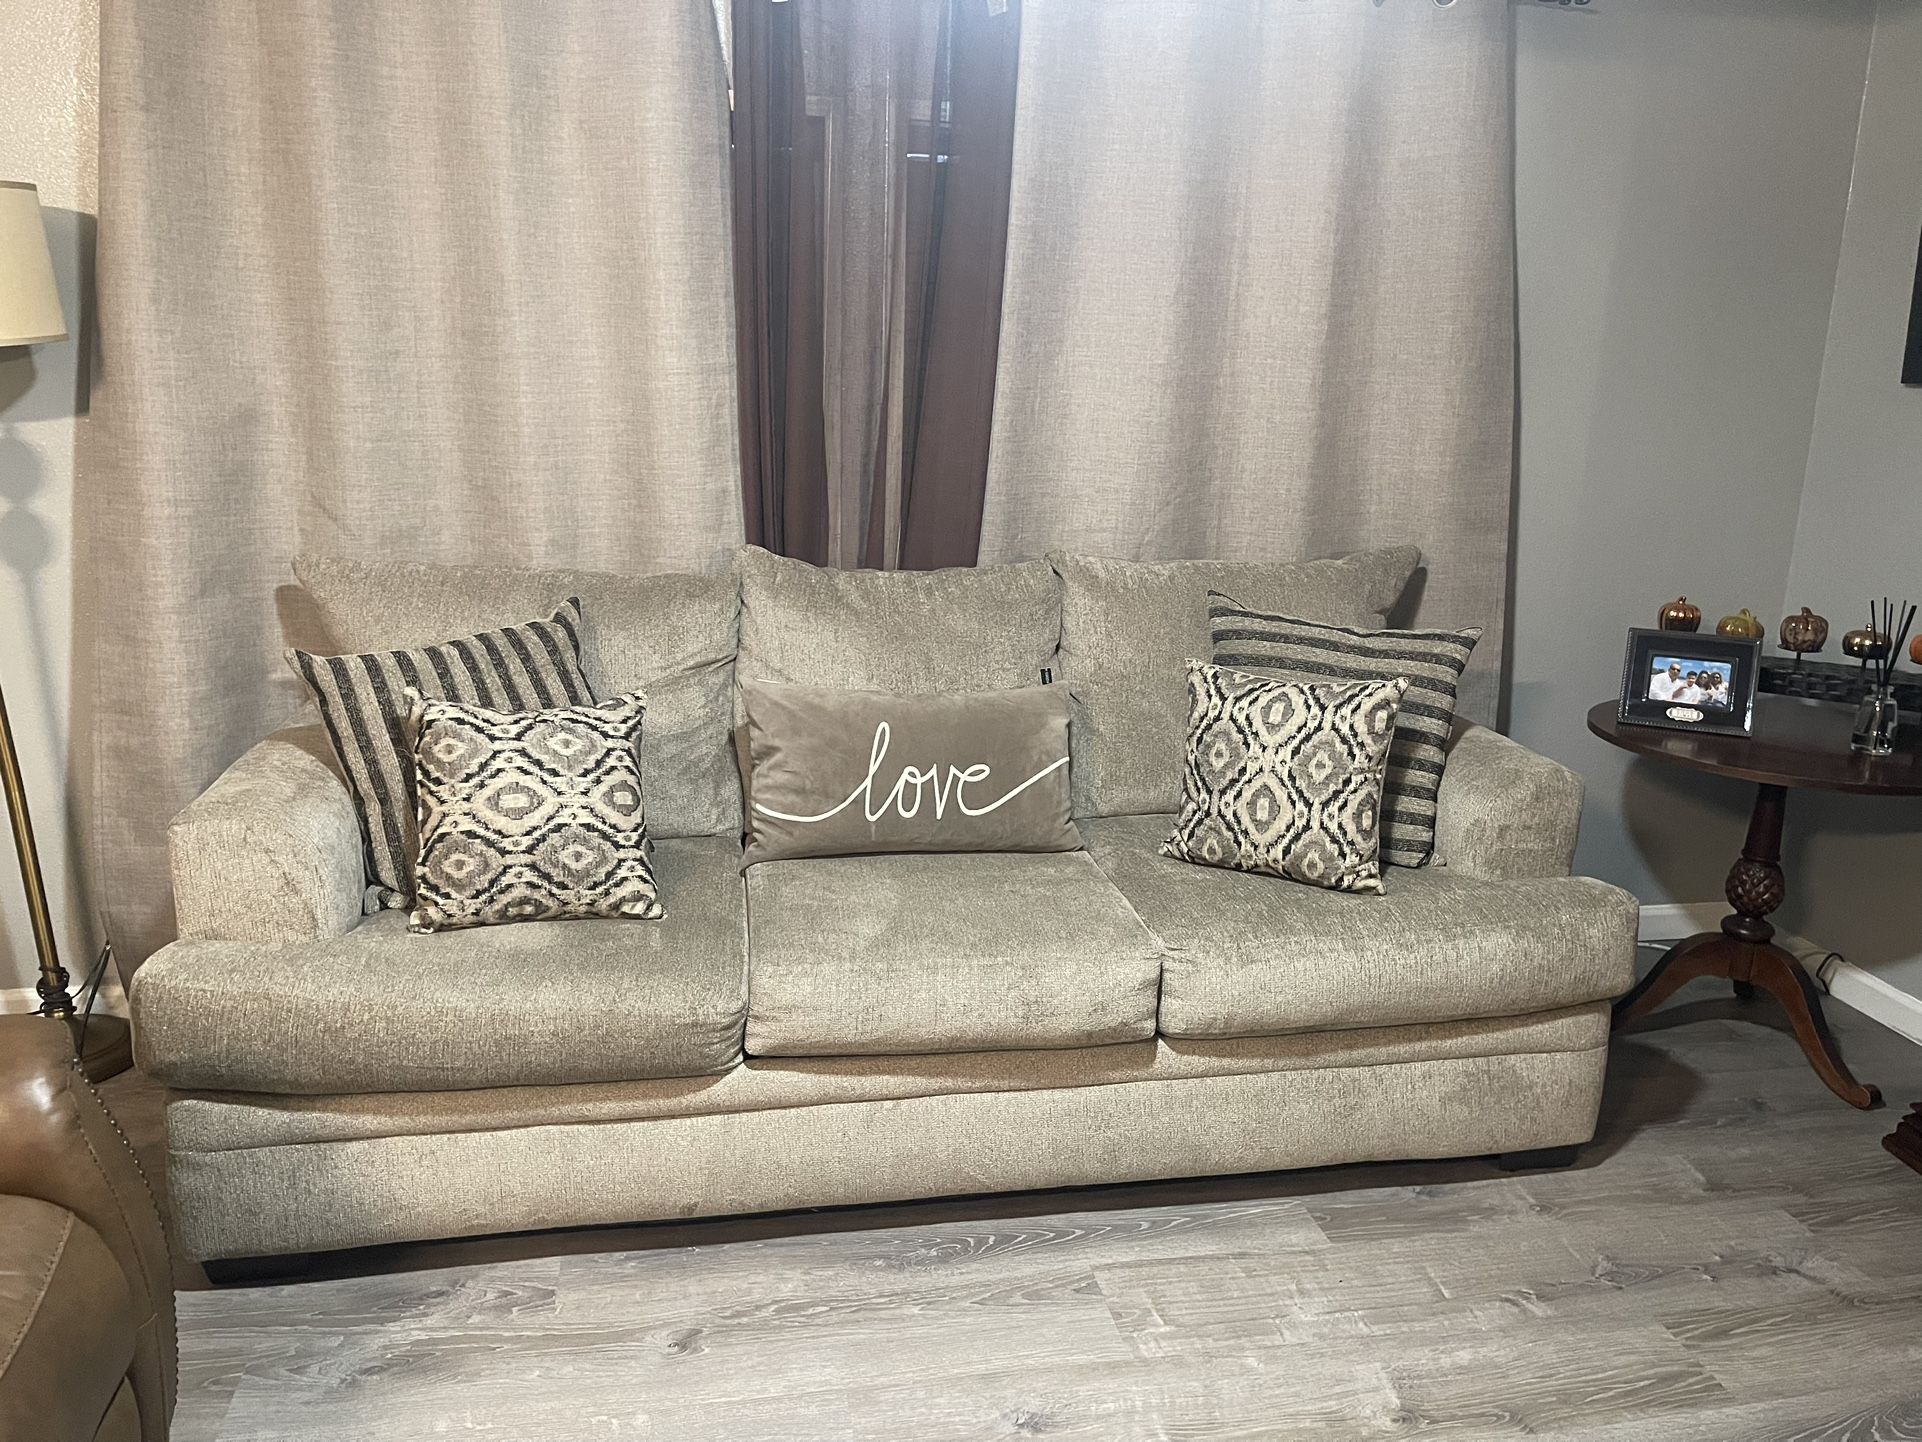 Light Grey Sofa Set With Pillows